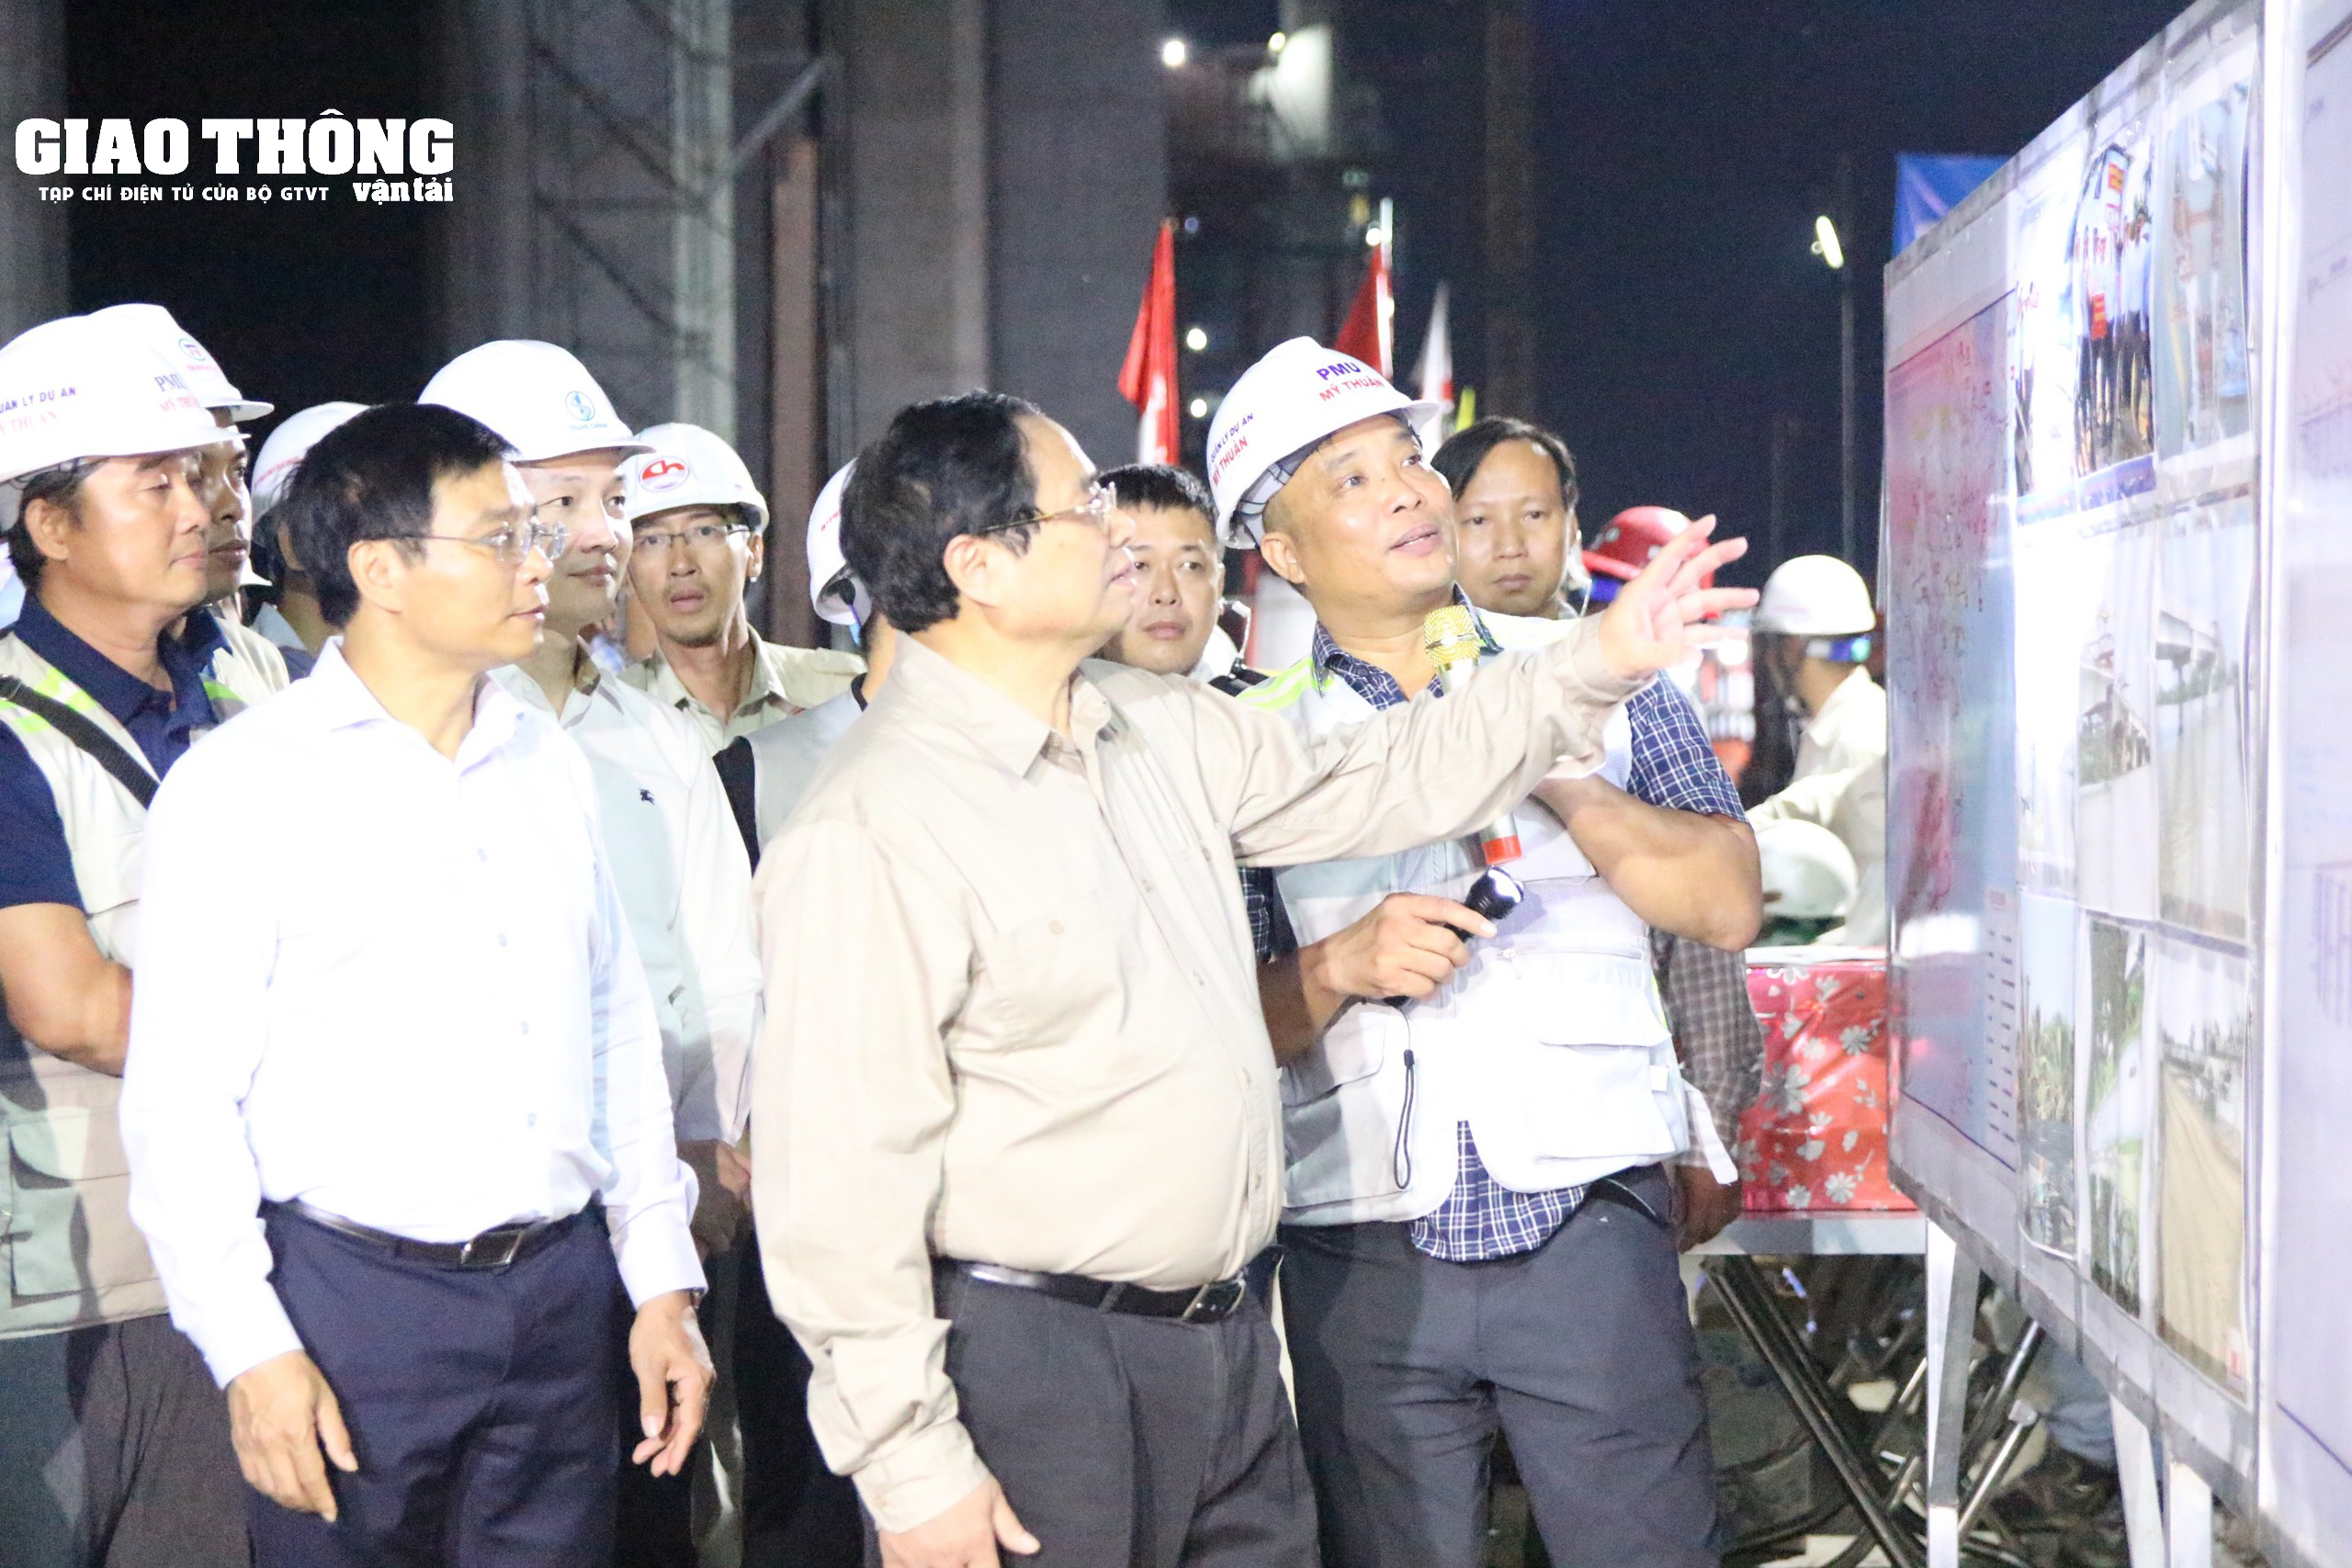 Chùm ảnh Thủ tướng Phạm Minh Chính kiểm tra cầu Rạch Miễu 2 trong đêm- Ảnh 11.